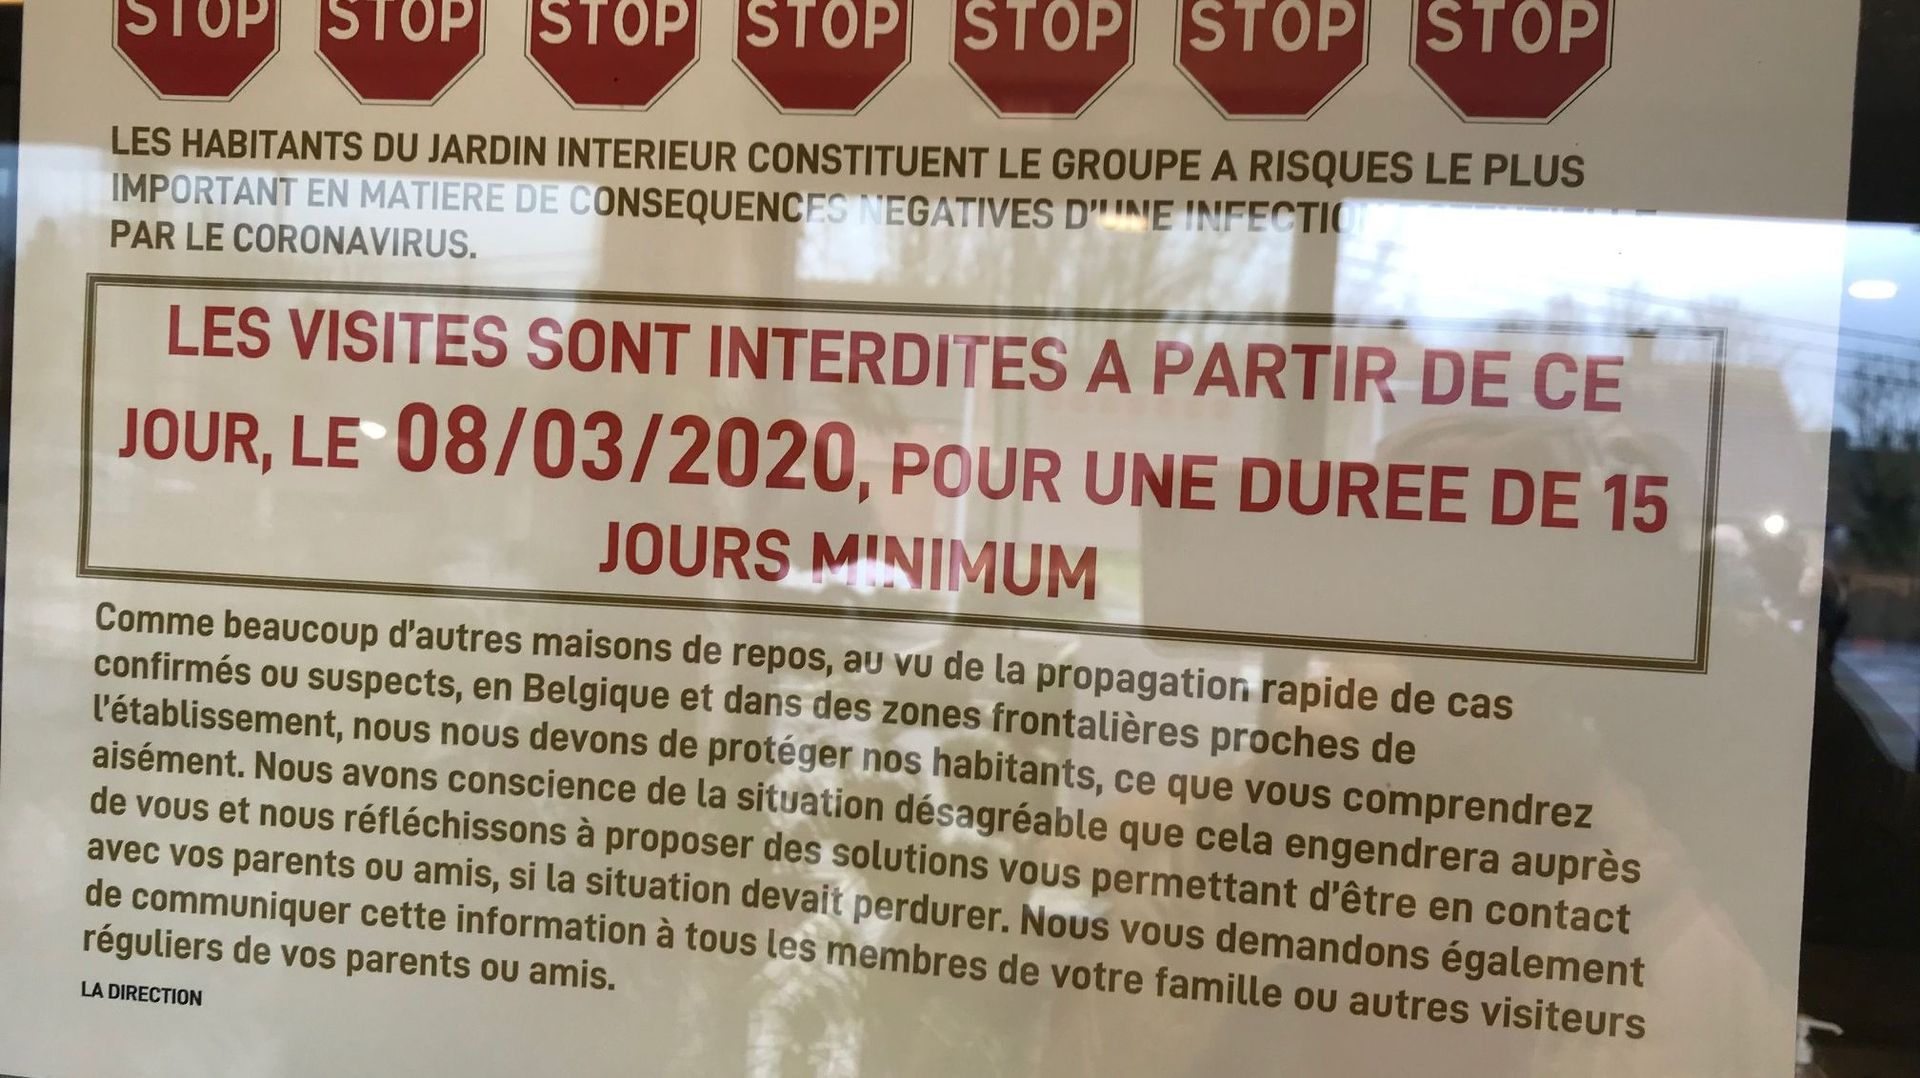 Frasnes-lez-Anvaing: Une maison de repos interdit les visites, par mesure de précaution